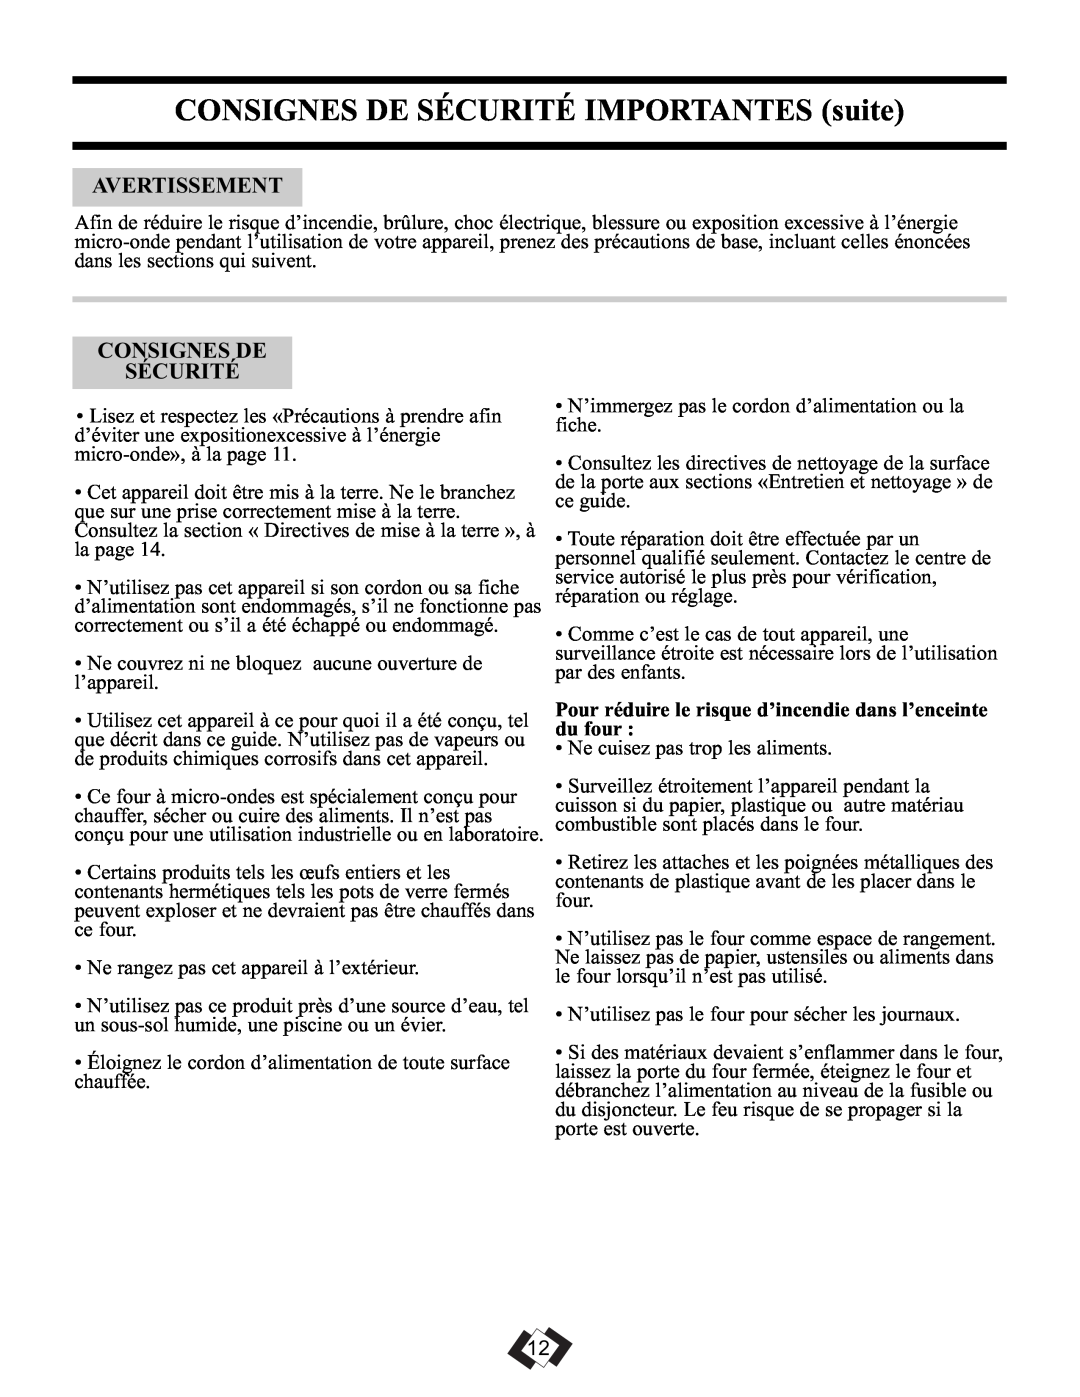 Sunbeam SBMW1049SS warranty CONSIGNES DE SÉCURITÉ IMPORTANTES suite, Avertissement, Consignes De Sécurité 